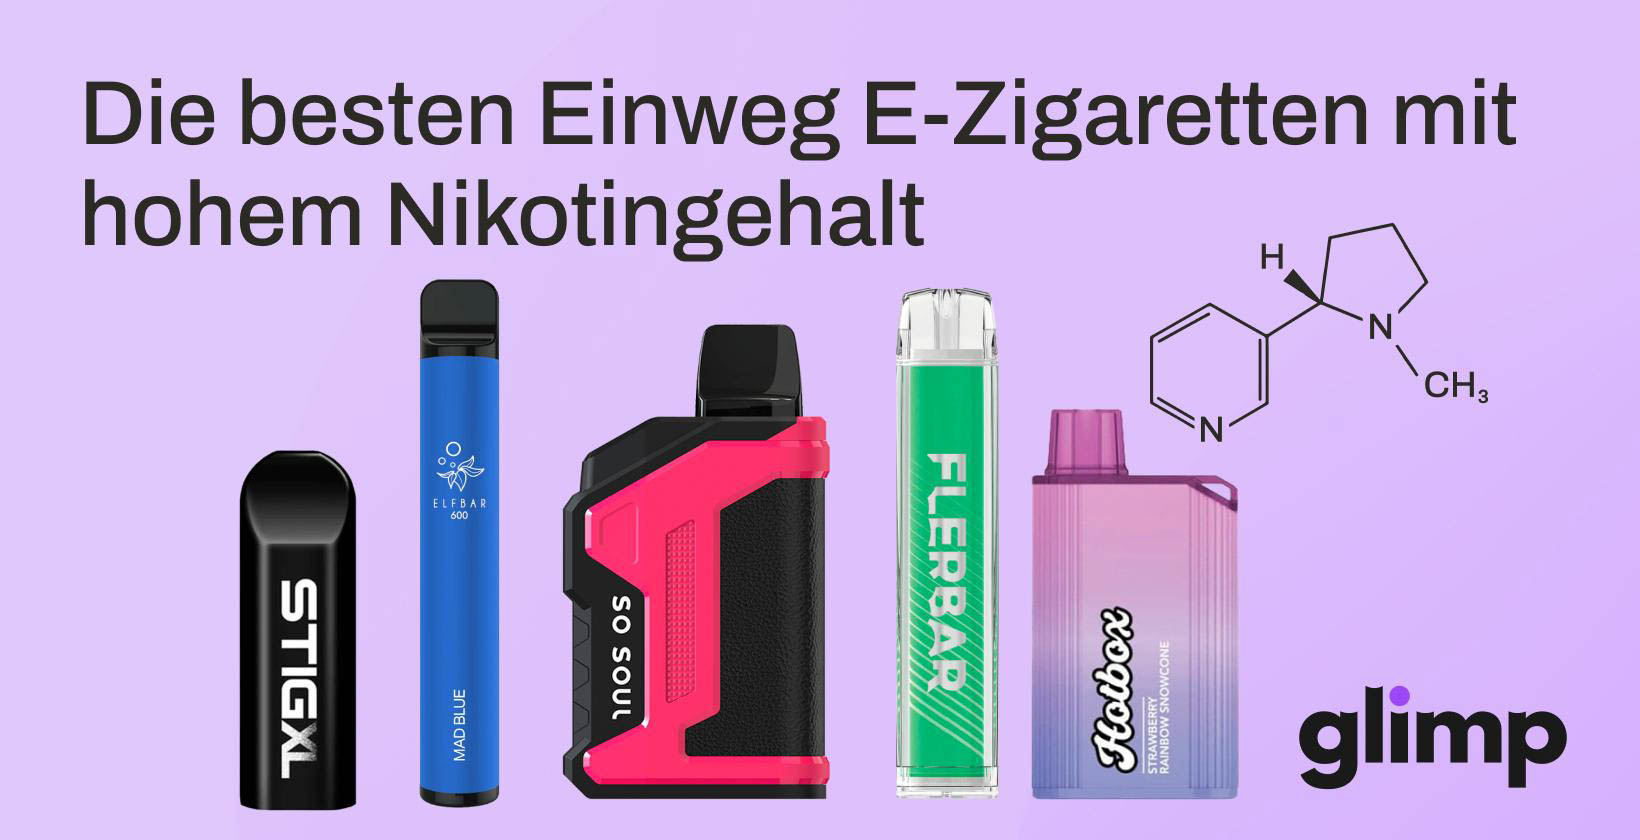 Die 17 besten Einweg E-Zigaretten mit hohem Nikotingehalt im Jahr